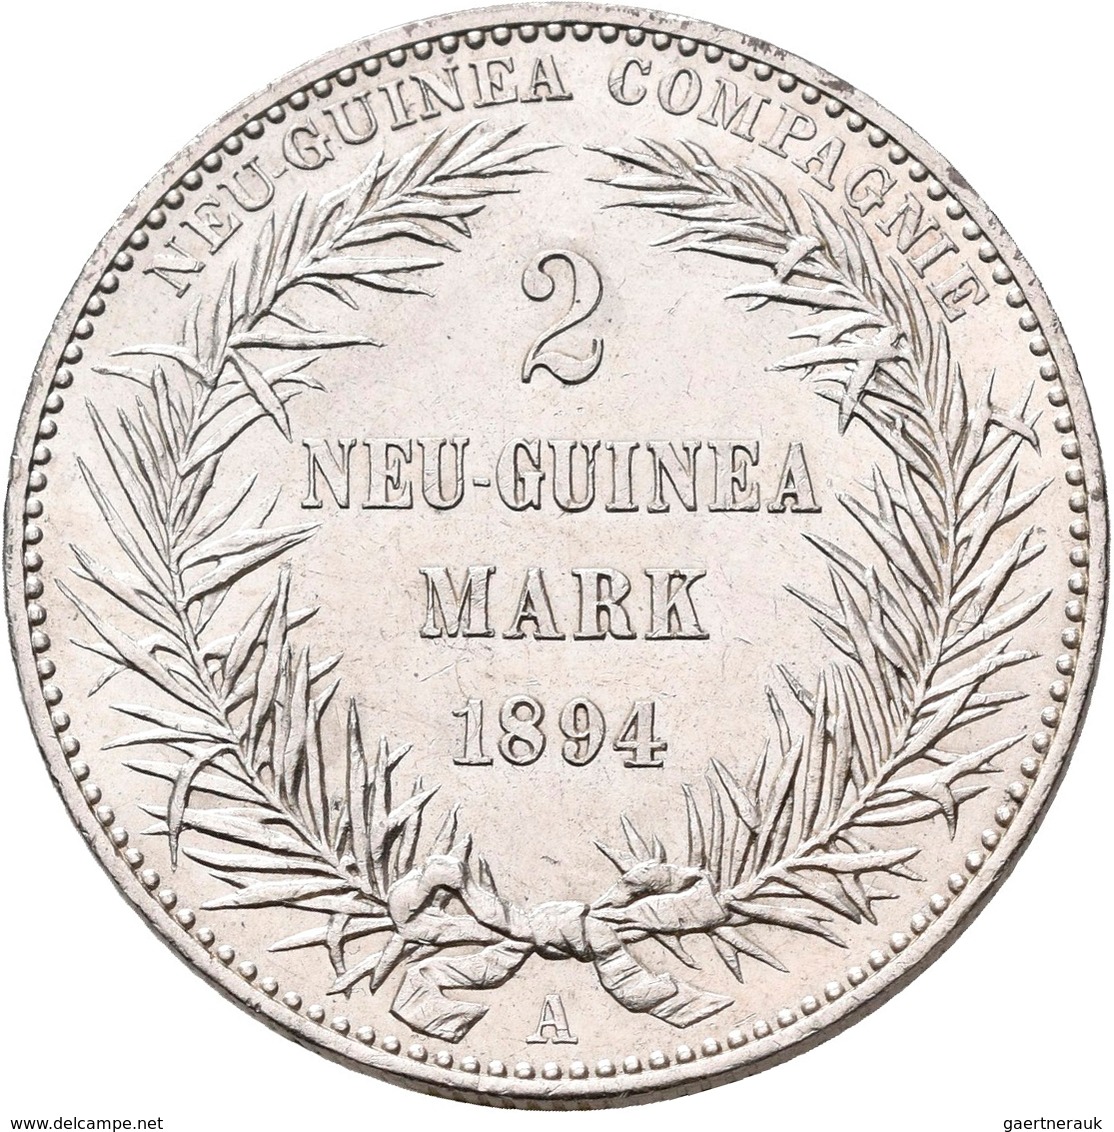 Deutsch-Neuguinea: 2 Neu-Guinea Mark 1894 A, Paradiesvogel, Jaeger 706, Kleine Kratzer, Vorzüglich. - Nouvelle Guinée Allemande